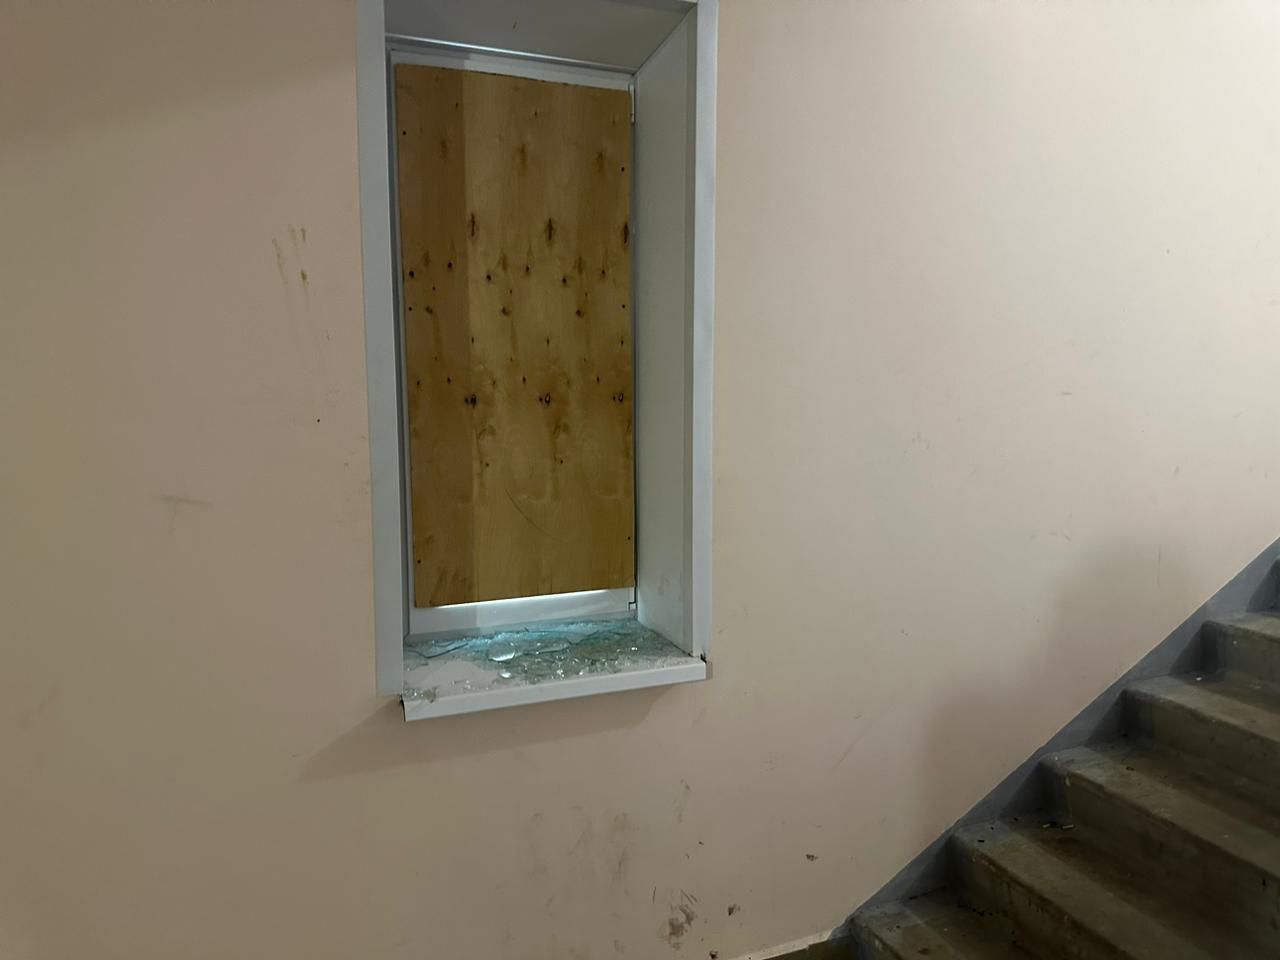 Управляющая компания заколотила разбитые окна в девятиэтажке для сирот фанерой. Злоумышленник найден